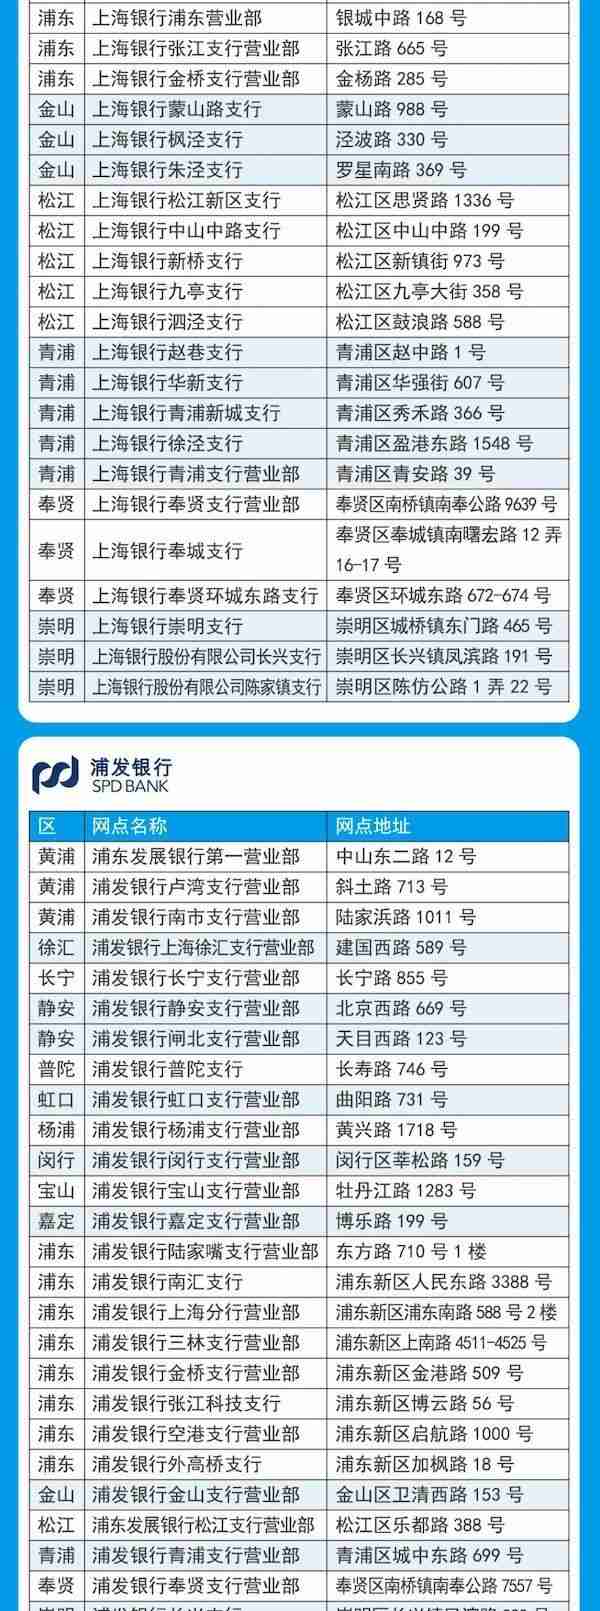 上海推出505个银行补换卡网点 可即时换领新版社保卡